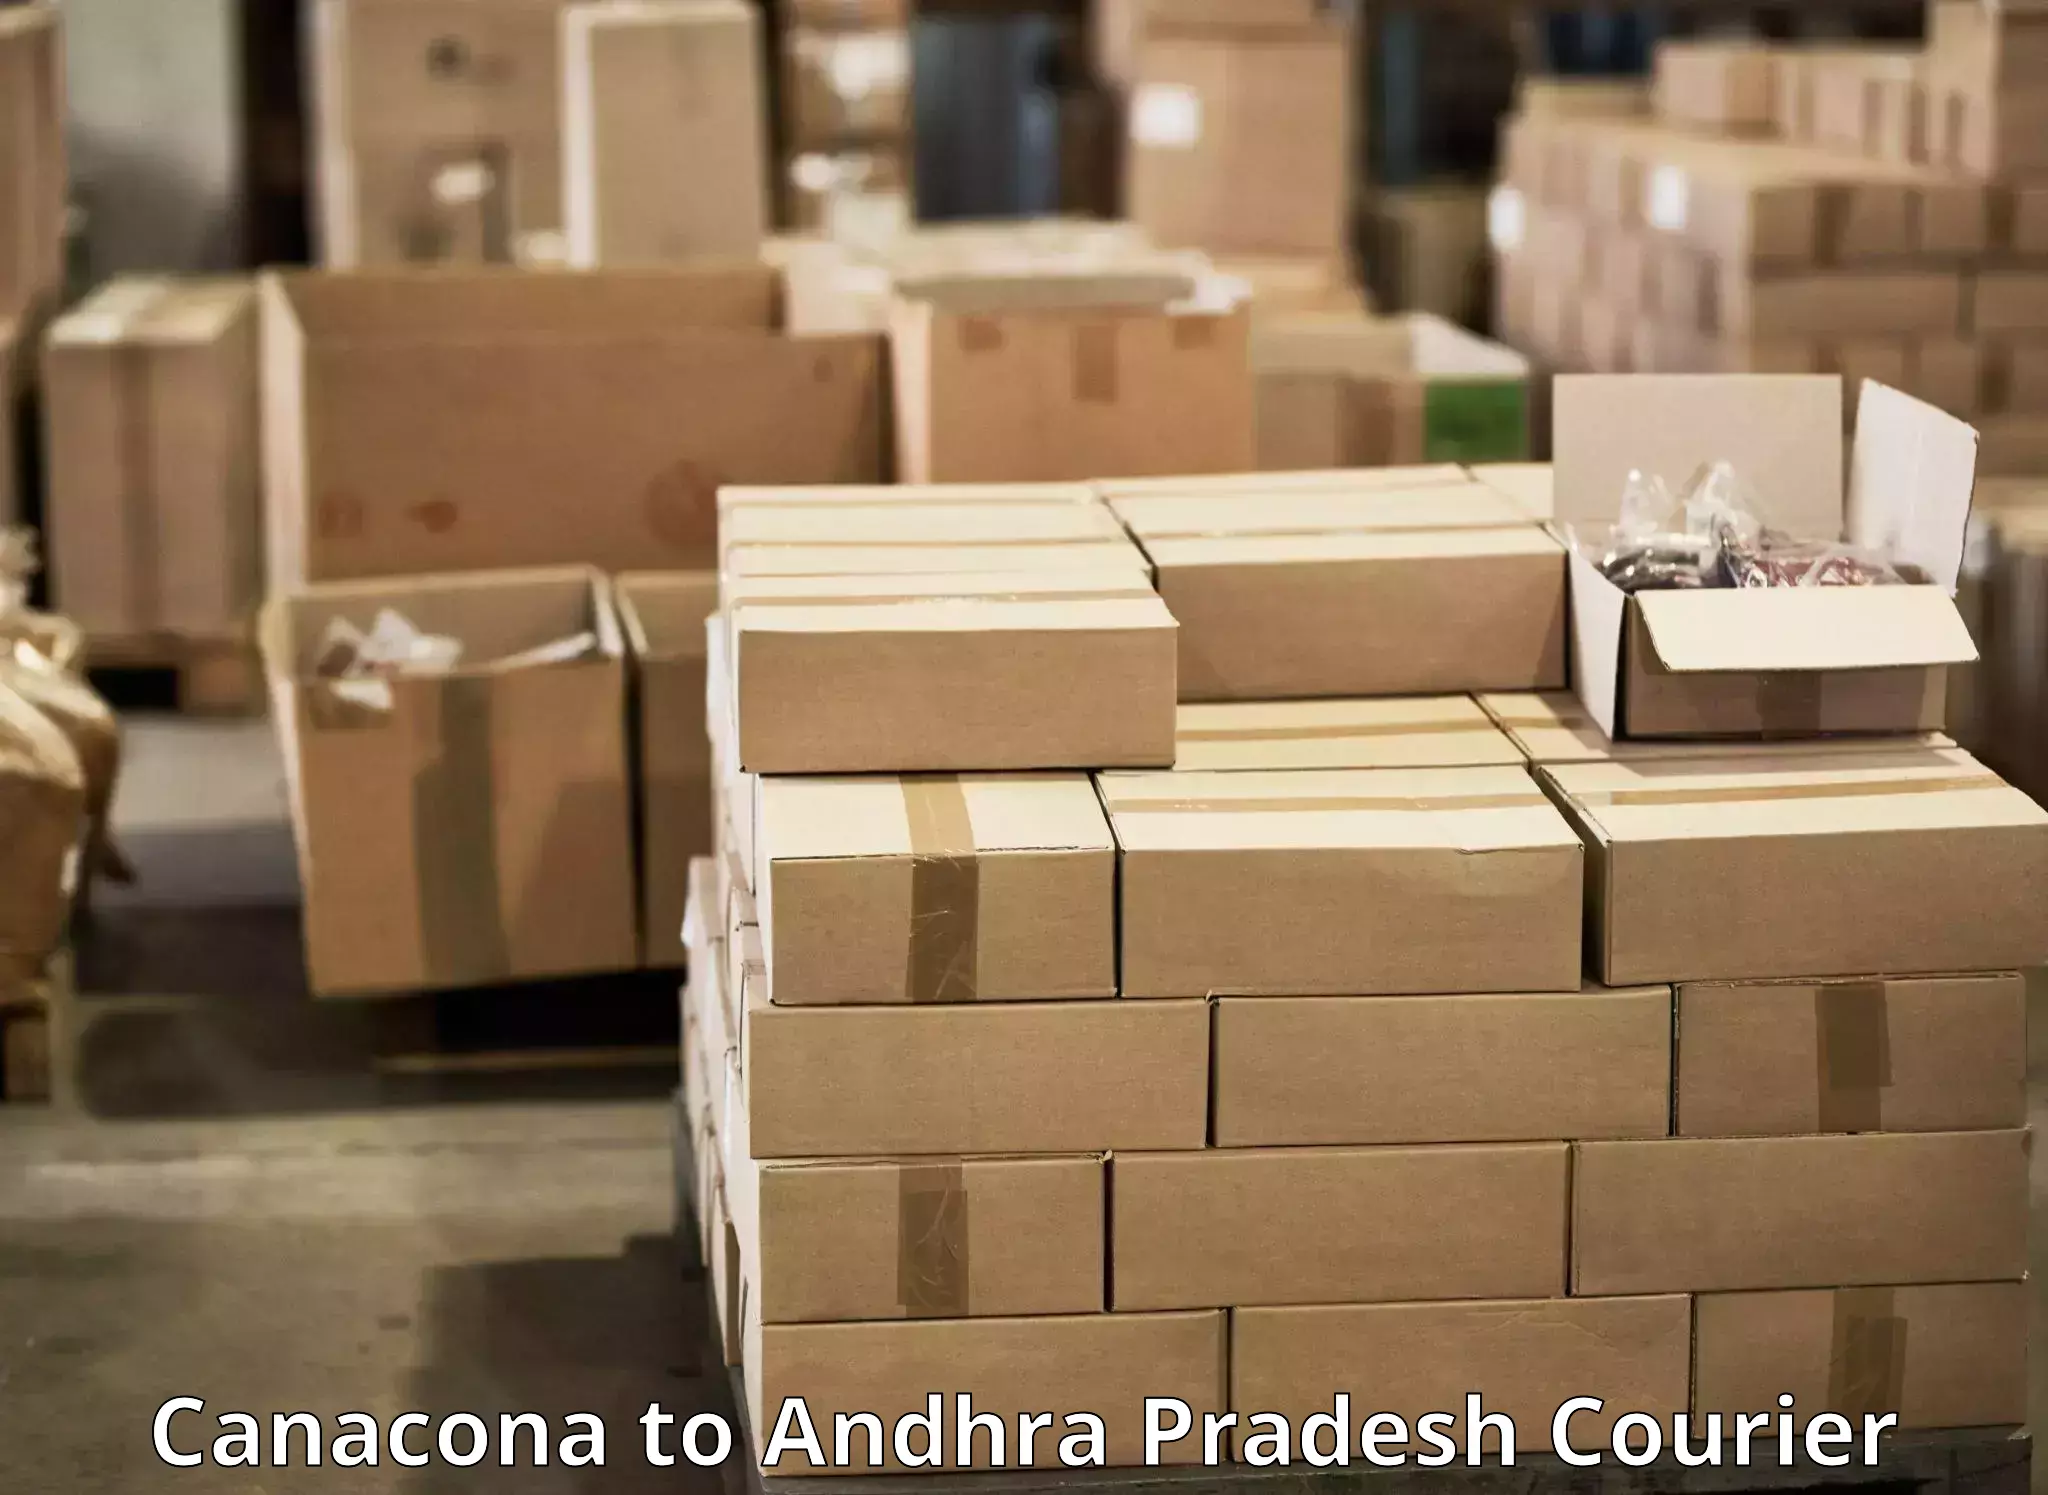 Courier service comparison Canacona to Machilipatnam